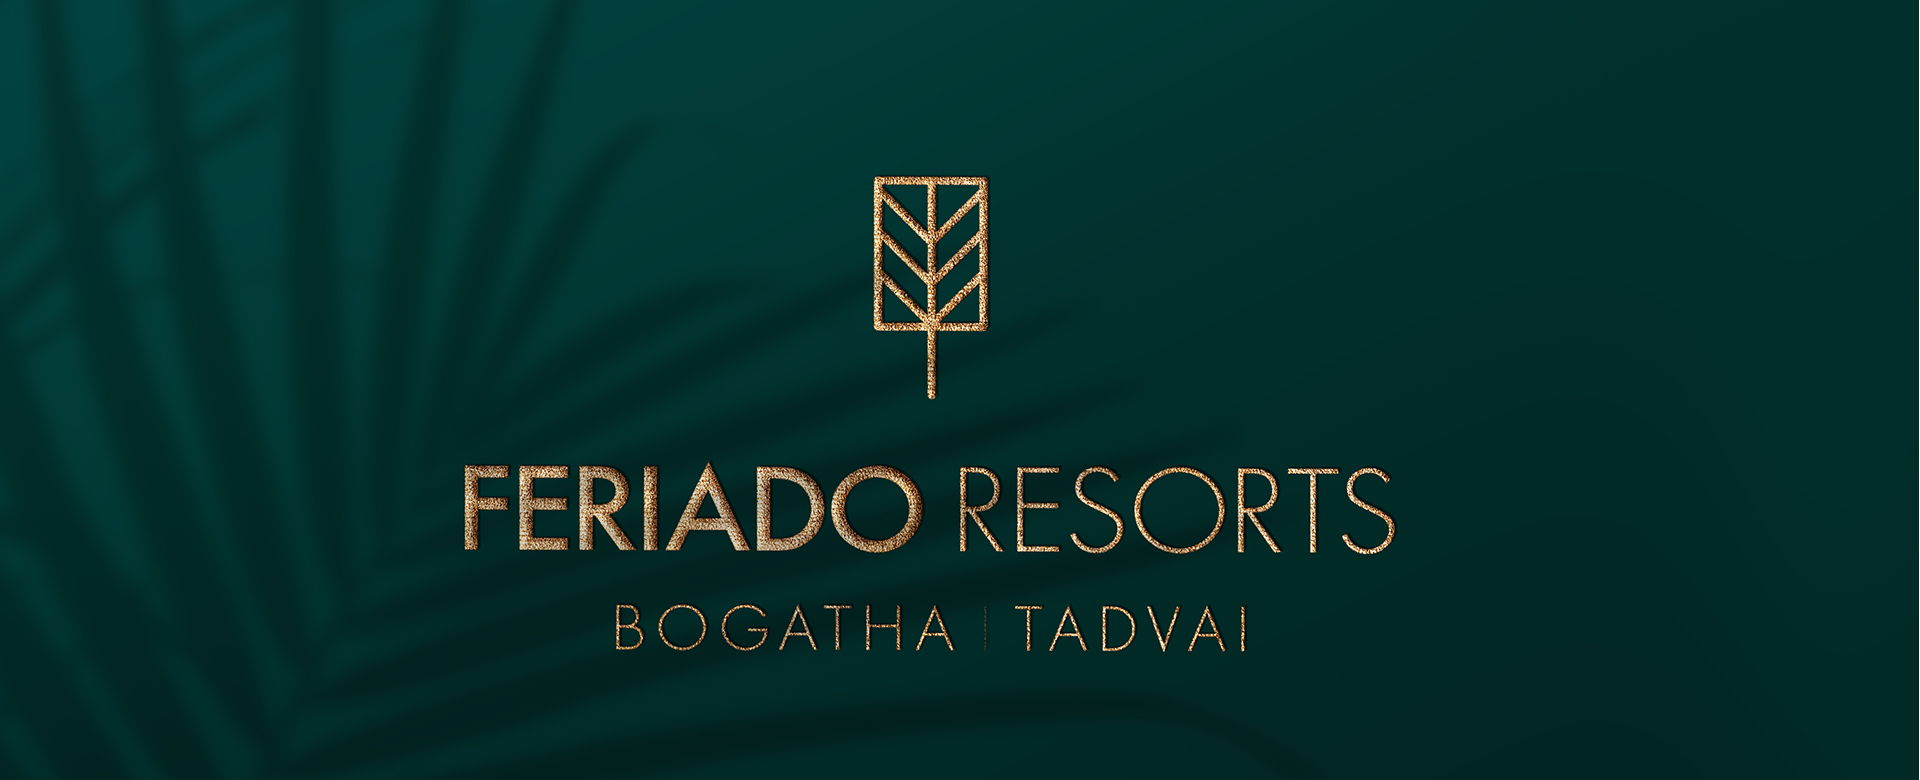 Feriado Resorts near Hyderabad - Tadvai - Bogatha